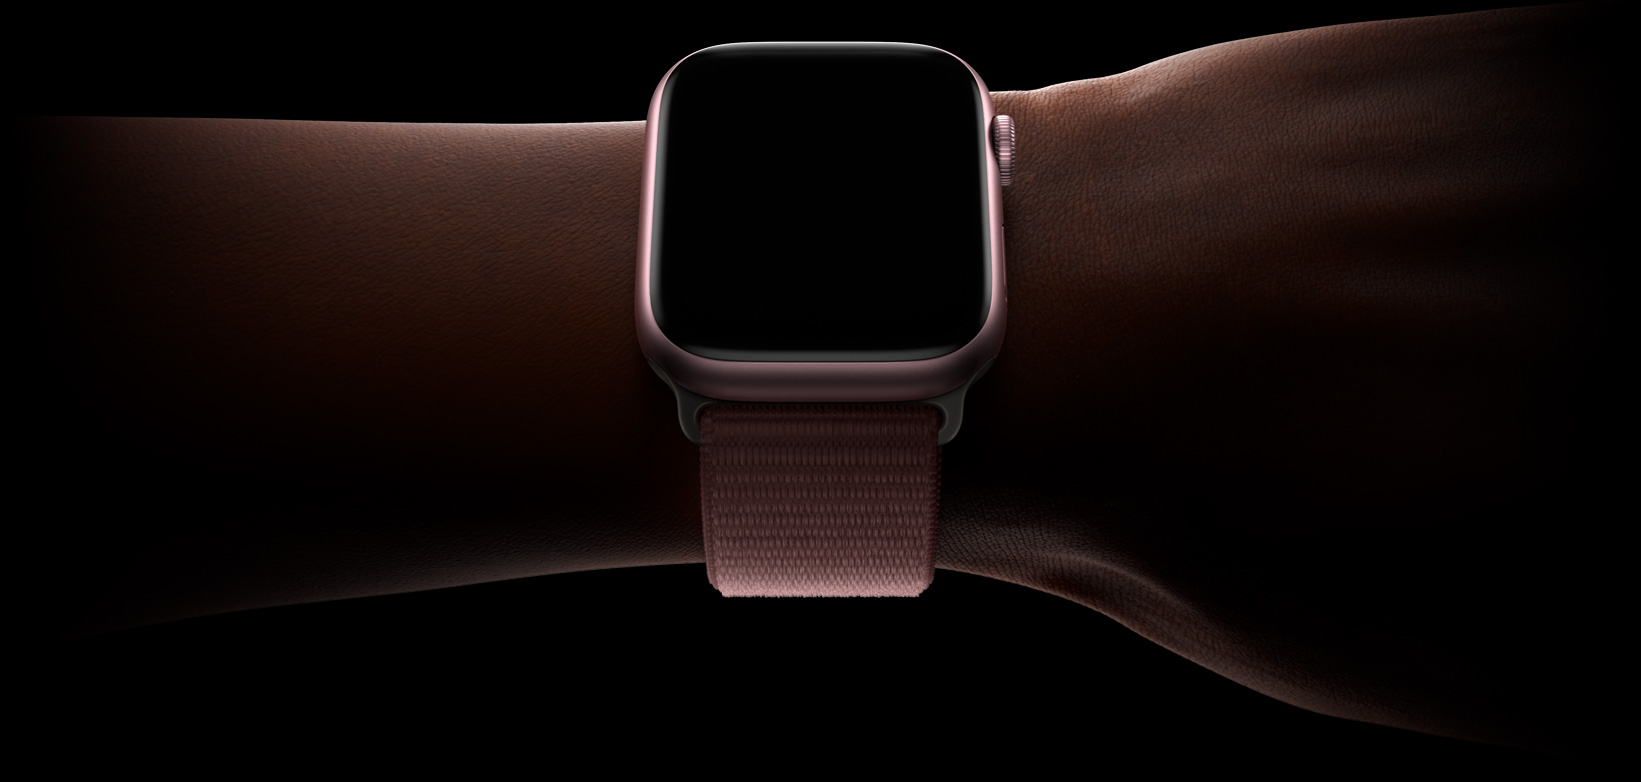 Imagem da parte da frente do Apple Watch mostrando um Conjunto Inteligente.